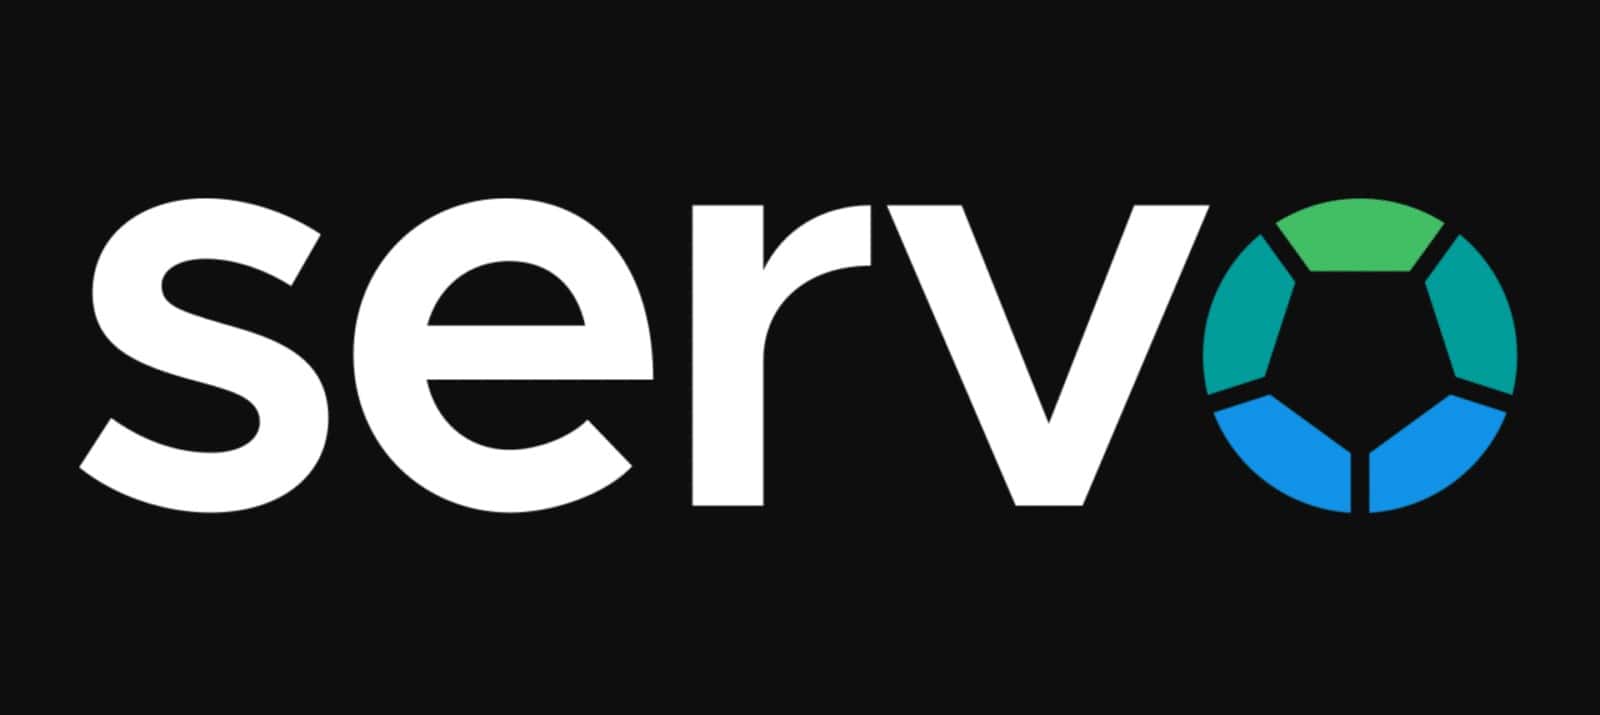 Rustで開発のオープンソースレンダリングエンジン「Servo」の開発が進む